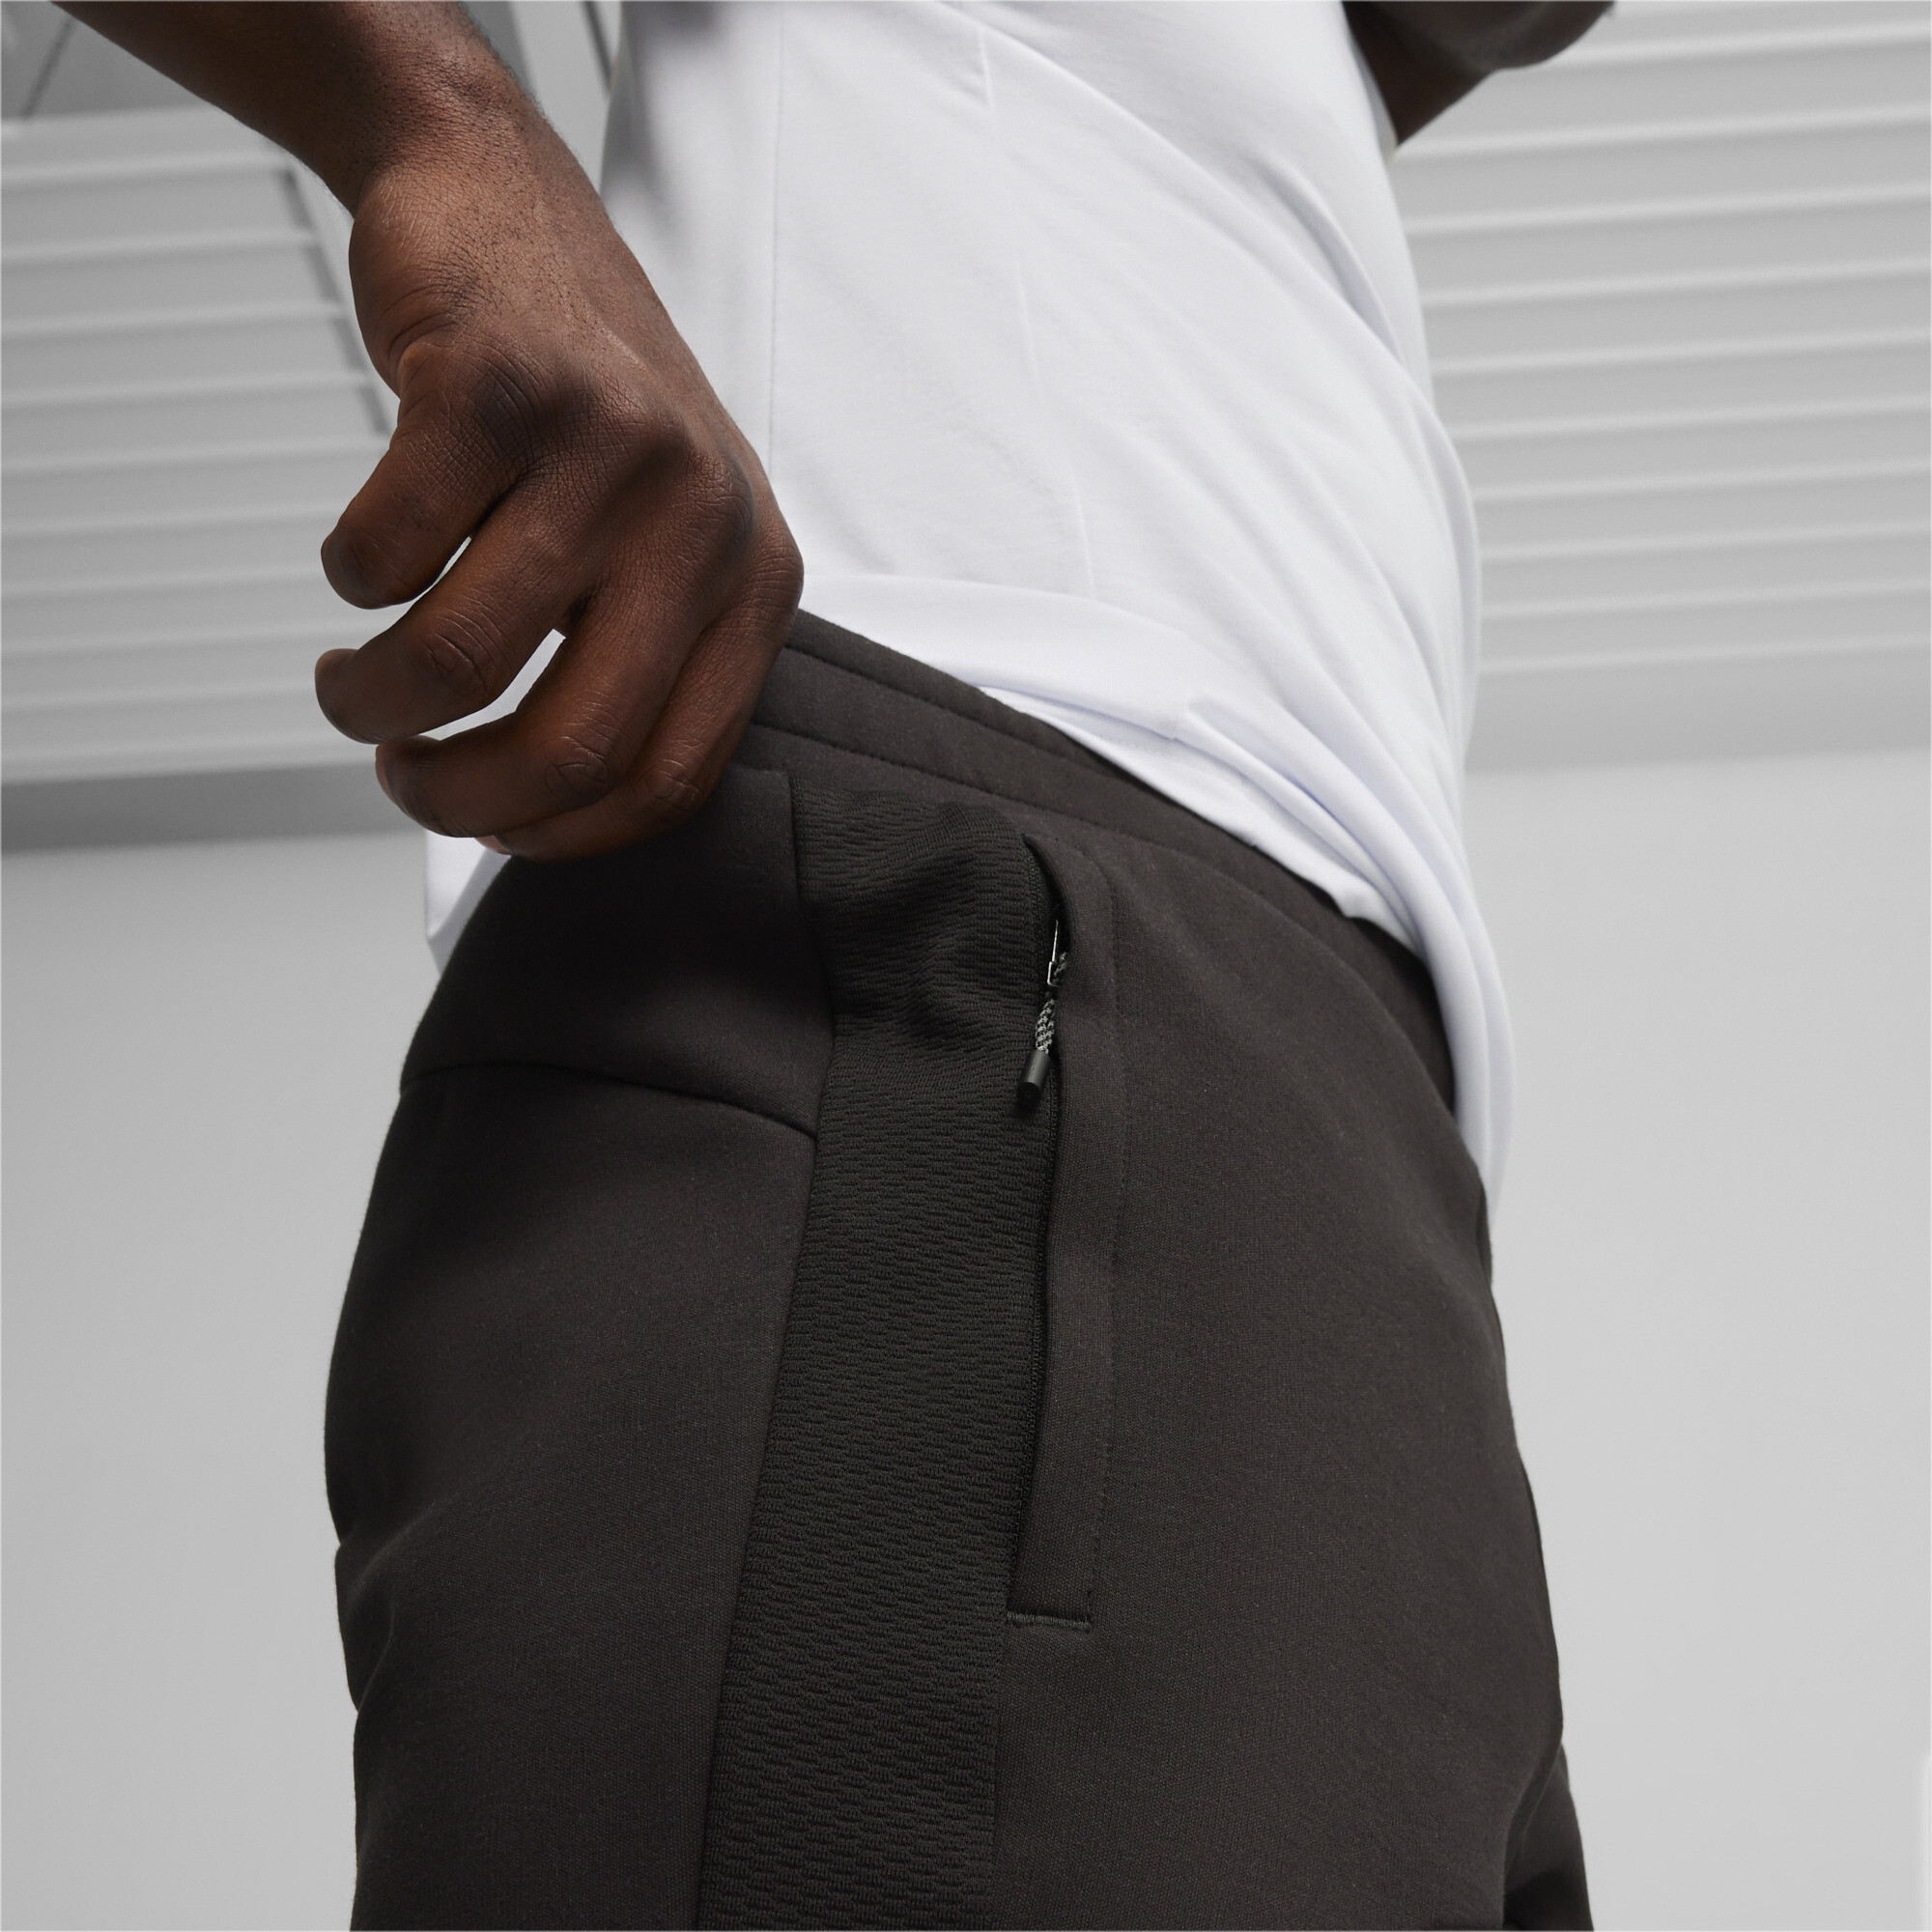 Men's PUMA EVOSTRIPE Shorts In Black, Size XL